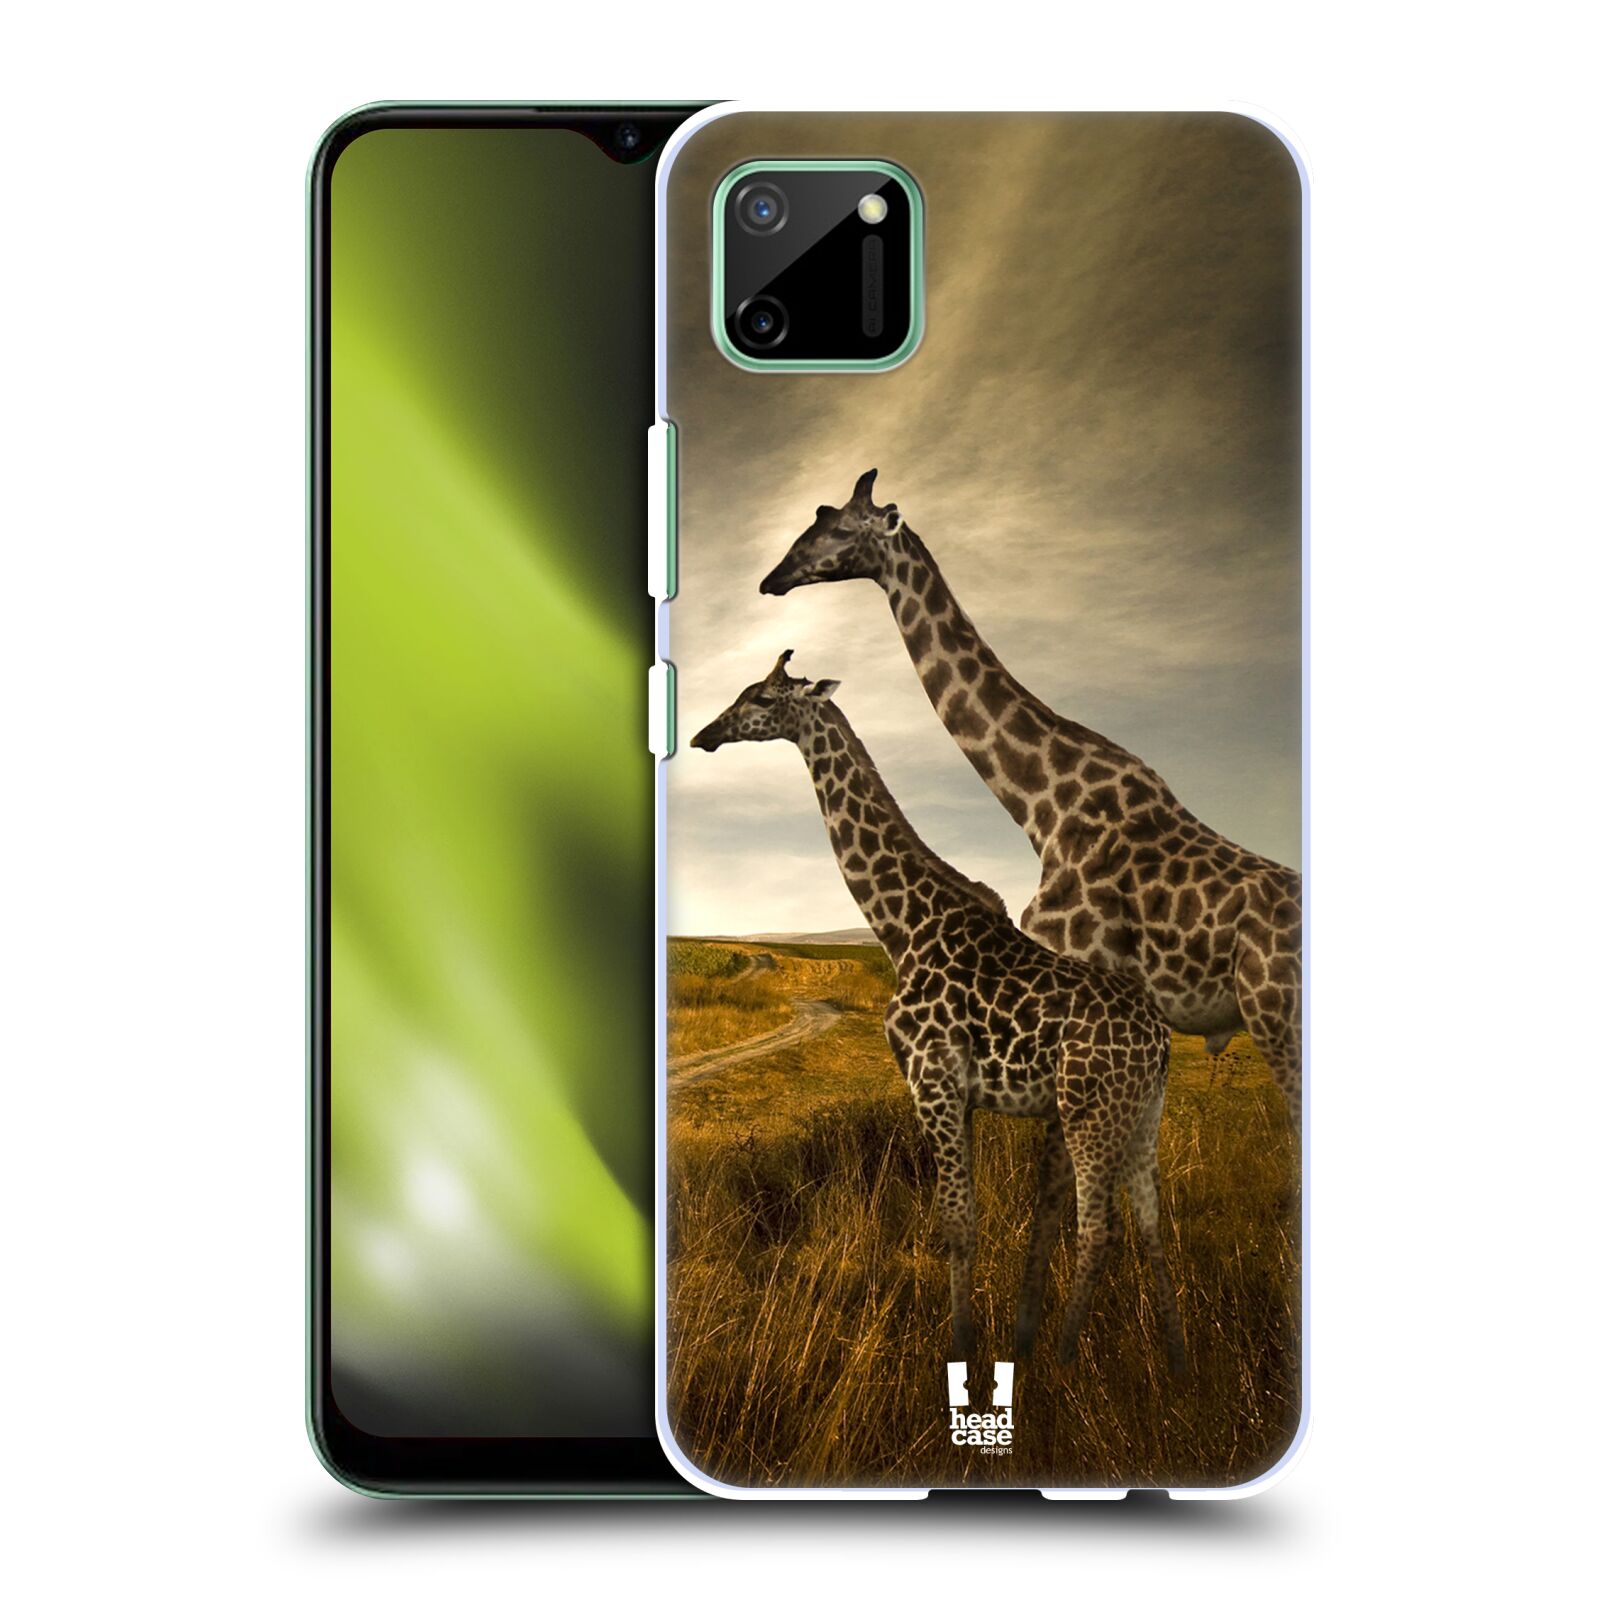 Zadní obal pro mobil Realme C11 - HEAD CASE - Svět zvířat žirafy